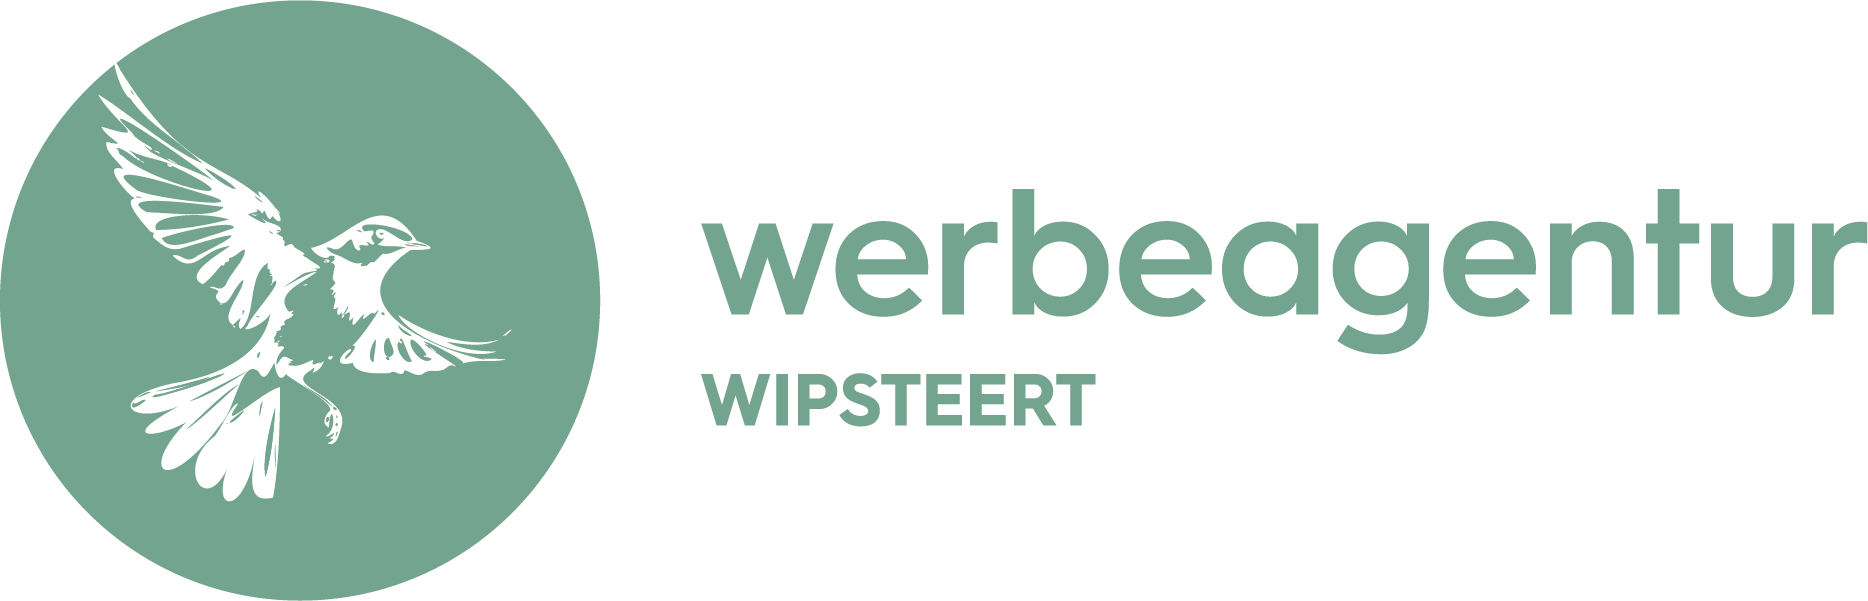 Wipsteert - Werbe- und Medienagentur